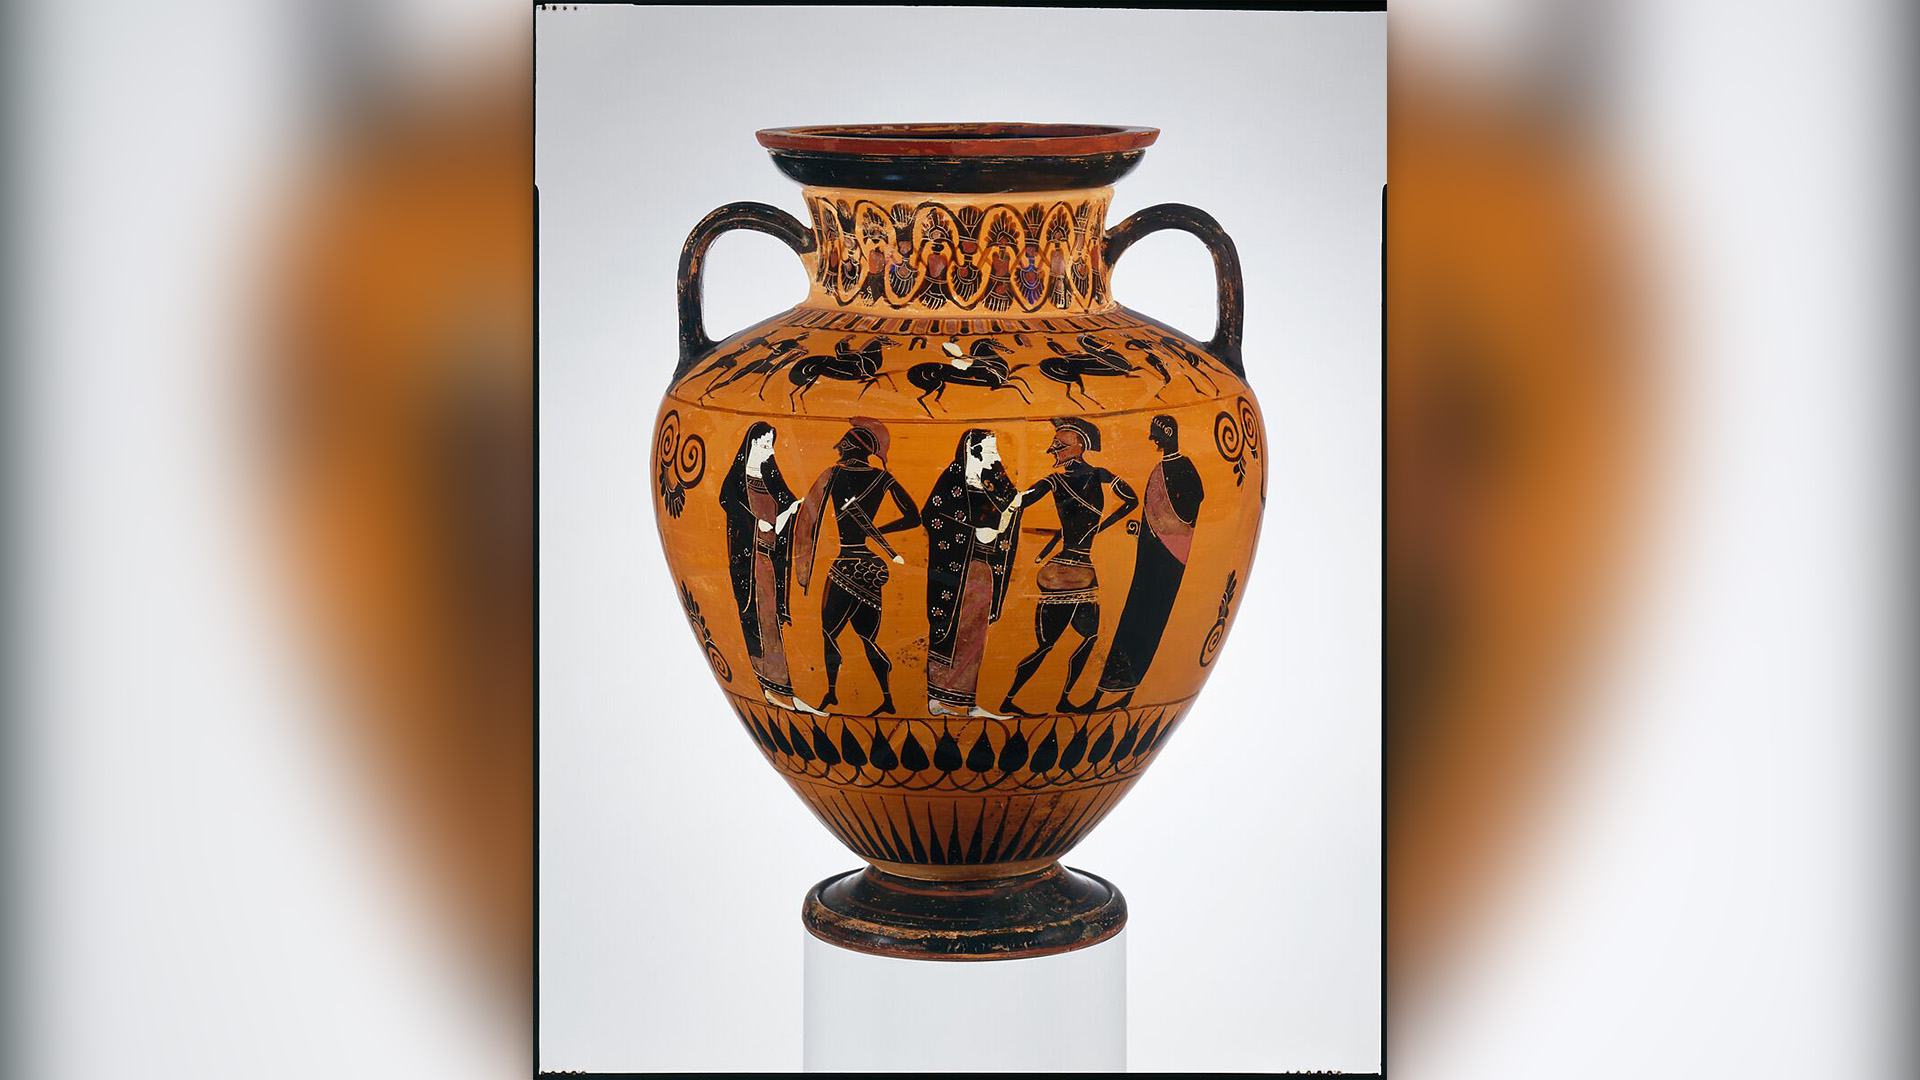 Теракотен съд от 540 г. пр.н.е., който показва древногръцкия цар Менелай, който си връща съпругата Елена след Троянската война.